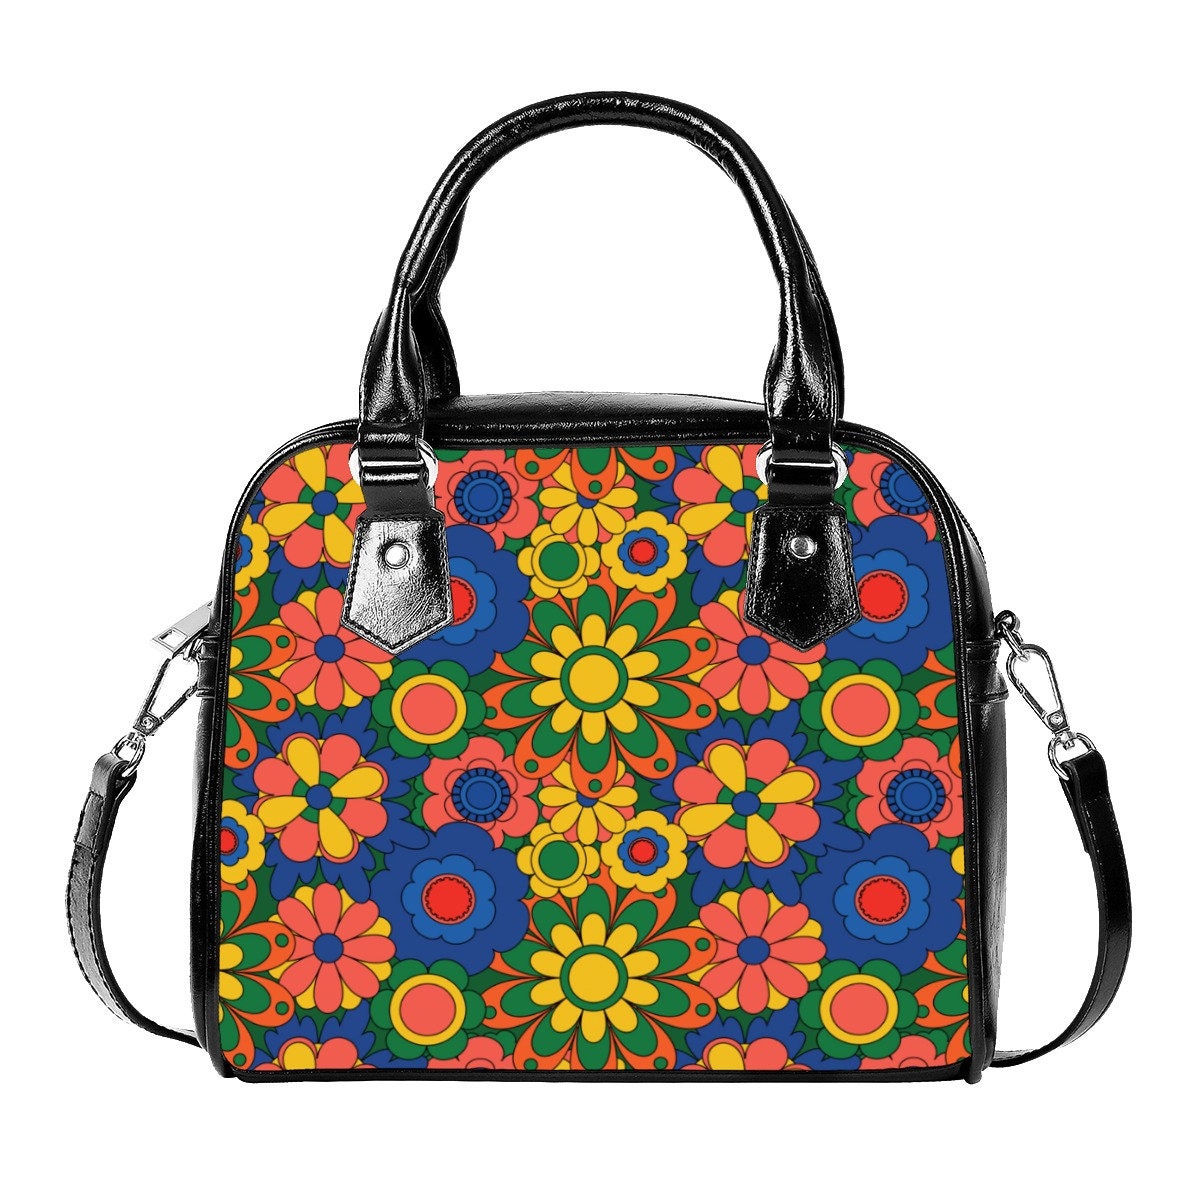 Damenhandtasche, Retro-Handtasche, Geldbörse im 60er-70er-Jahre-Stil, Mod 60er-Jahre, Handtasche im 60er-Jahre-Stil, Blumenhandtasche, Hippie-Geldbörse, Handtasche im Vintage-Stil